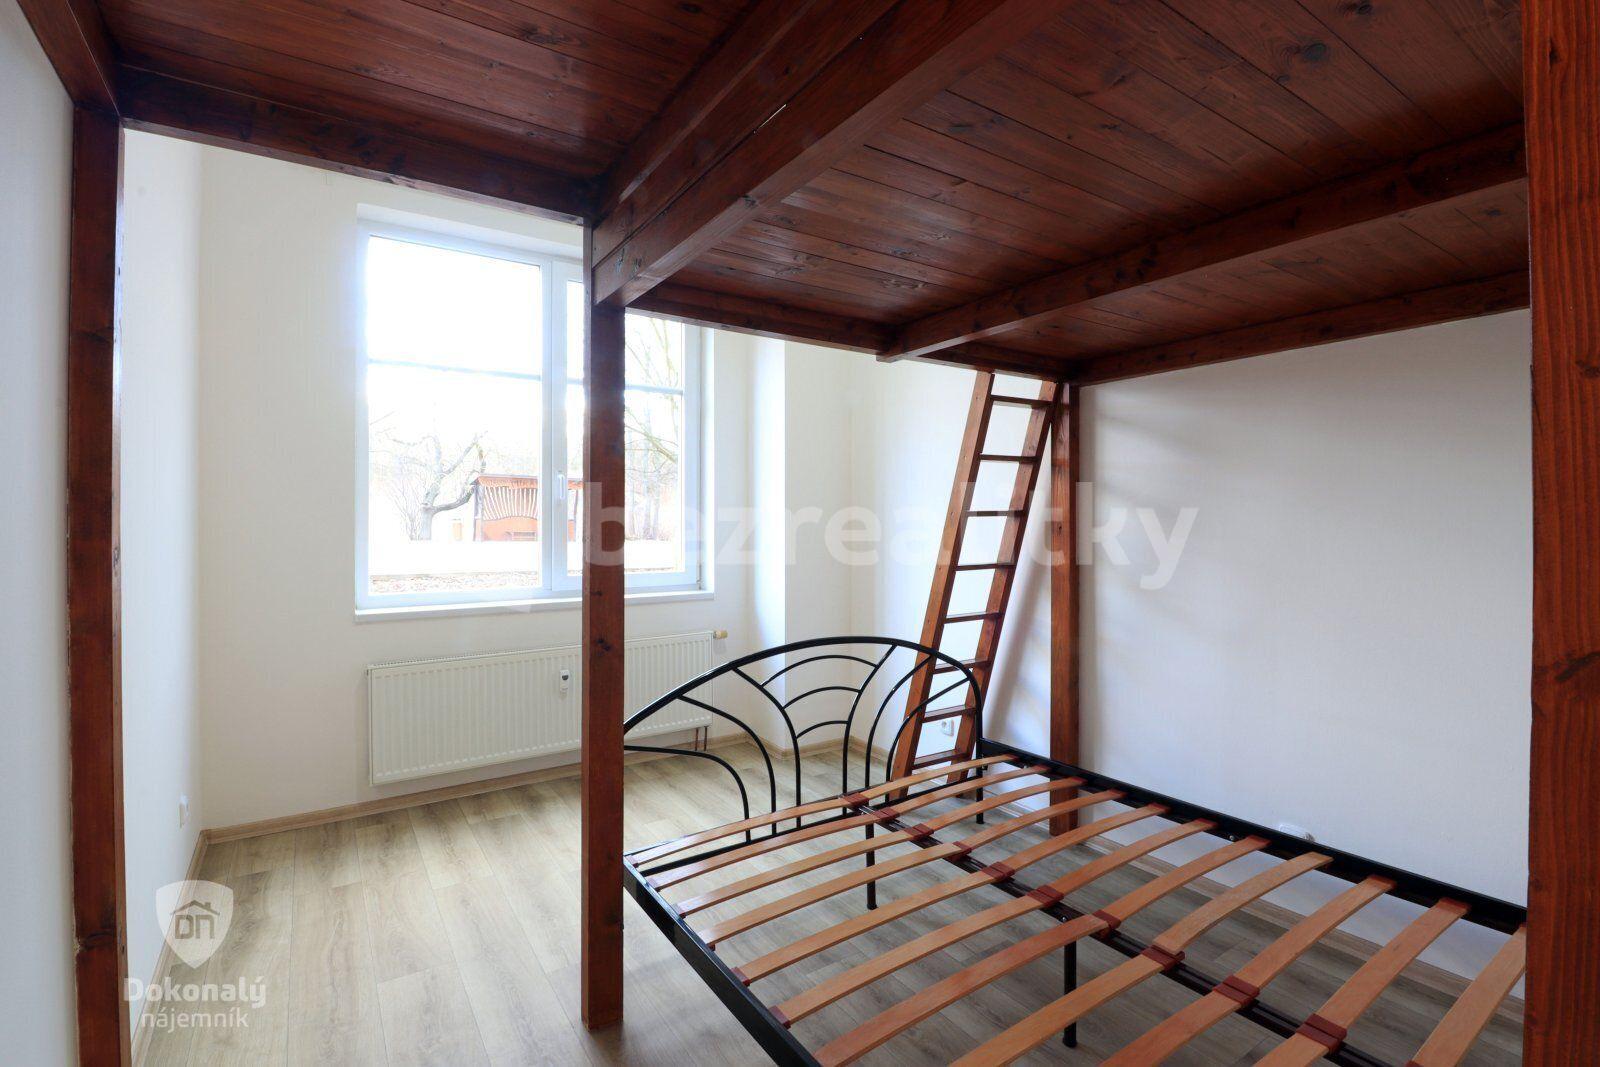 1 bedroom with open-plan kitchen flat to rent, 58 m², Topolová, Milovice, Středočeský Region